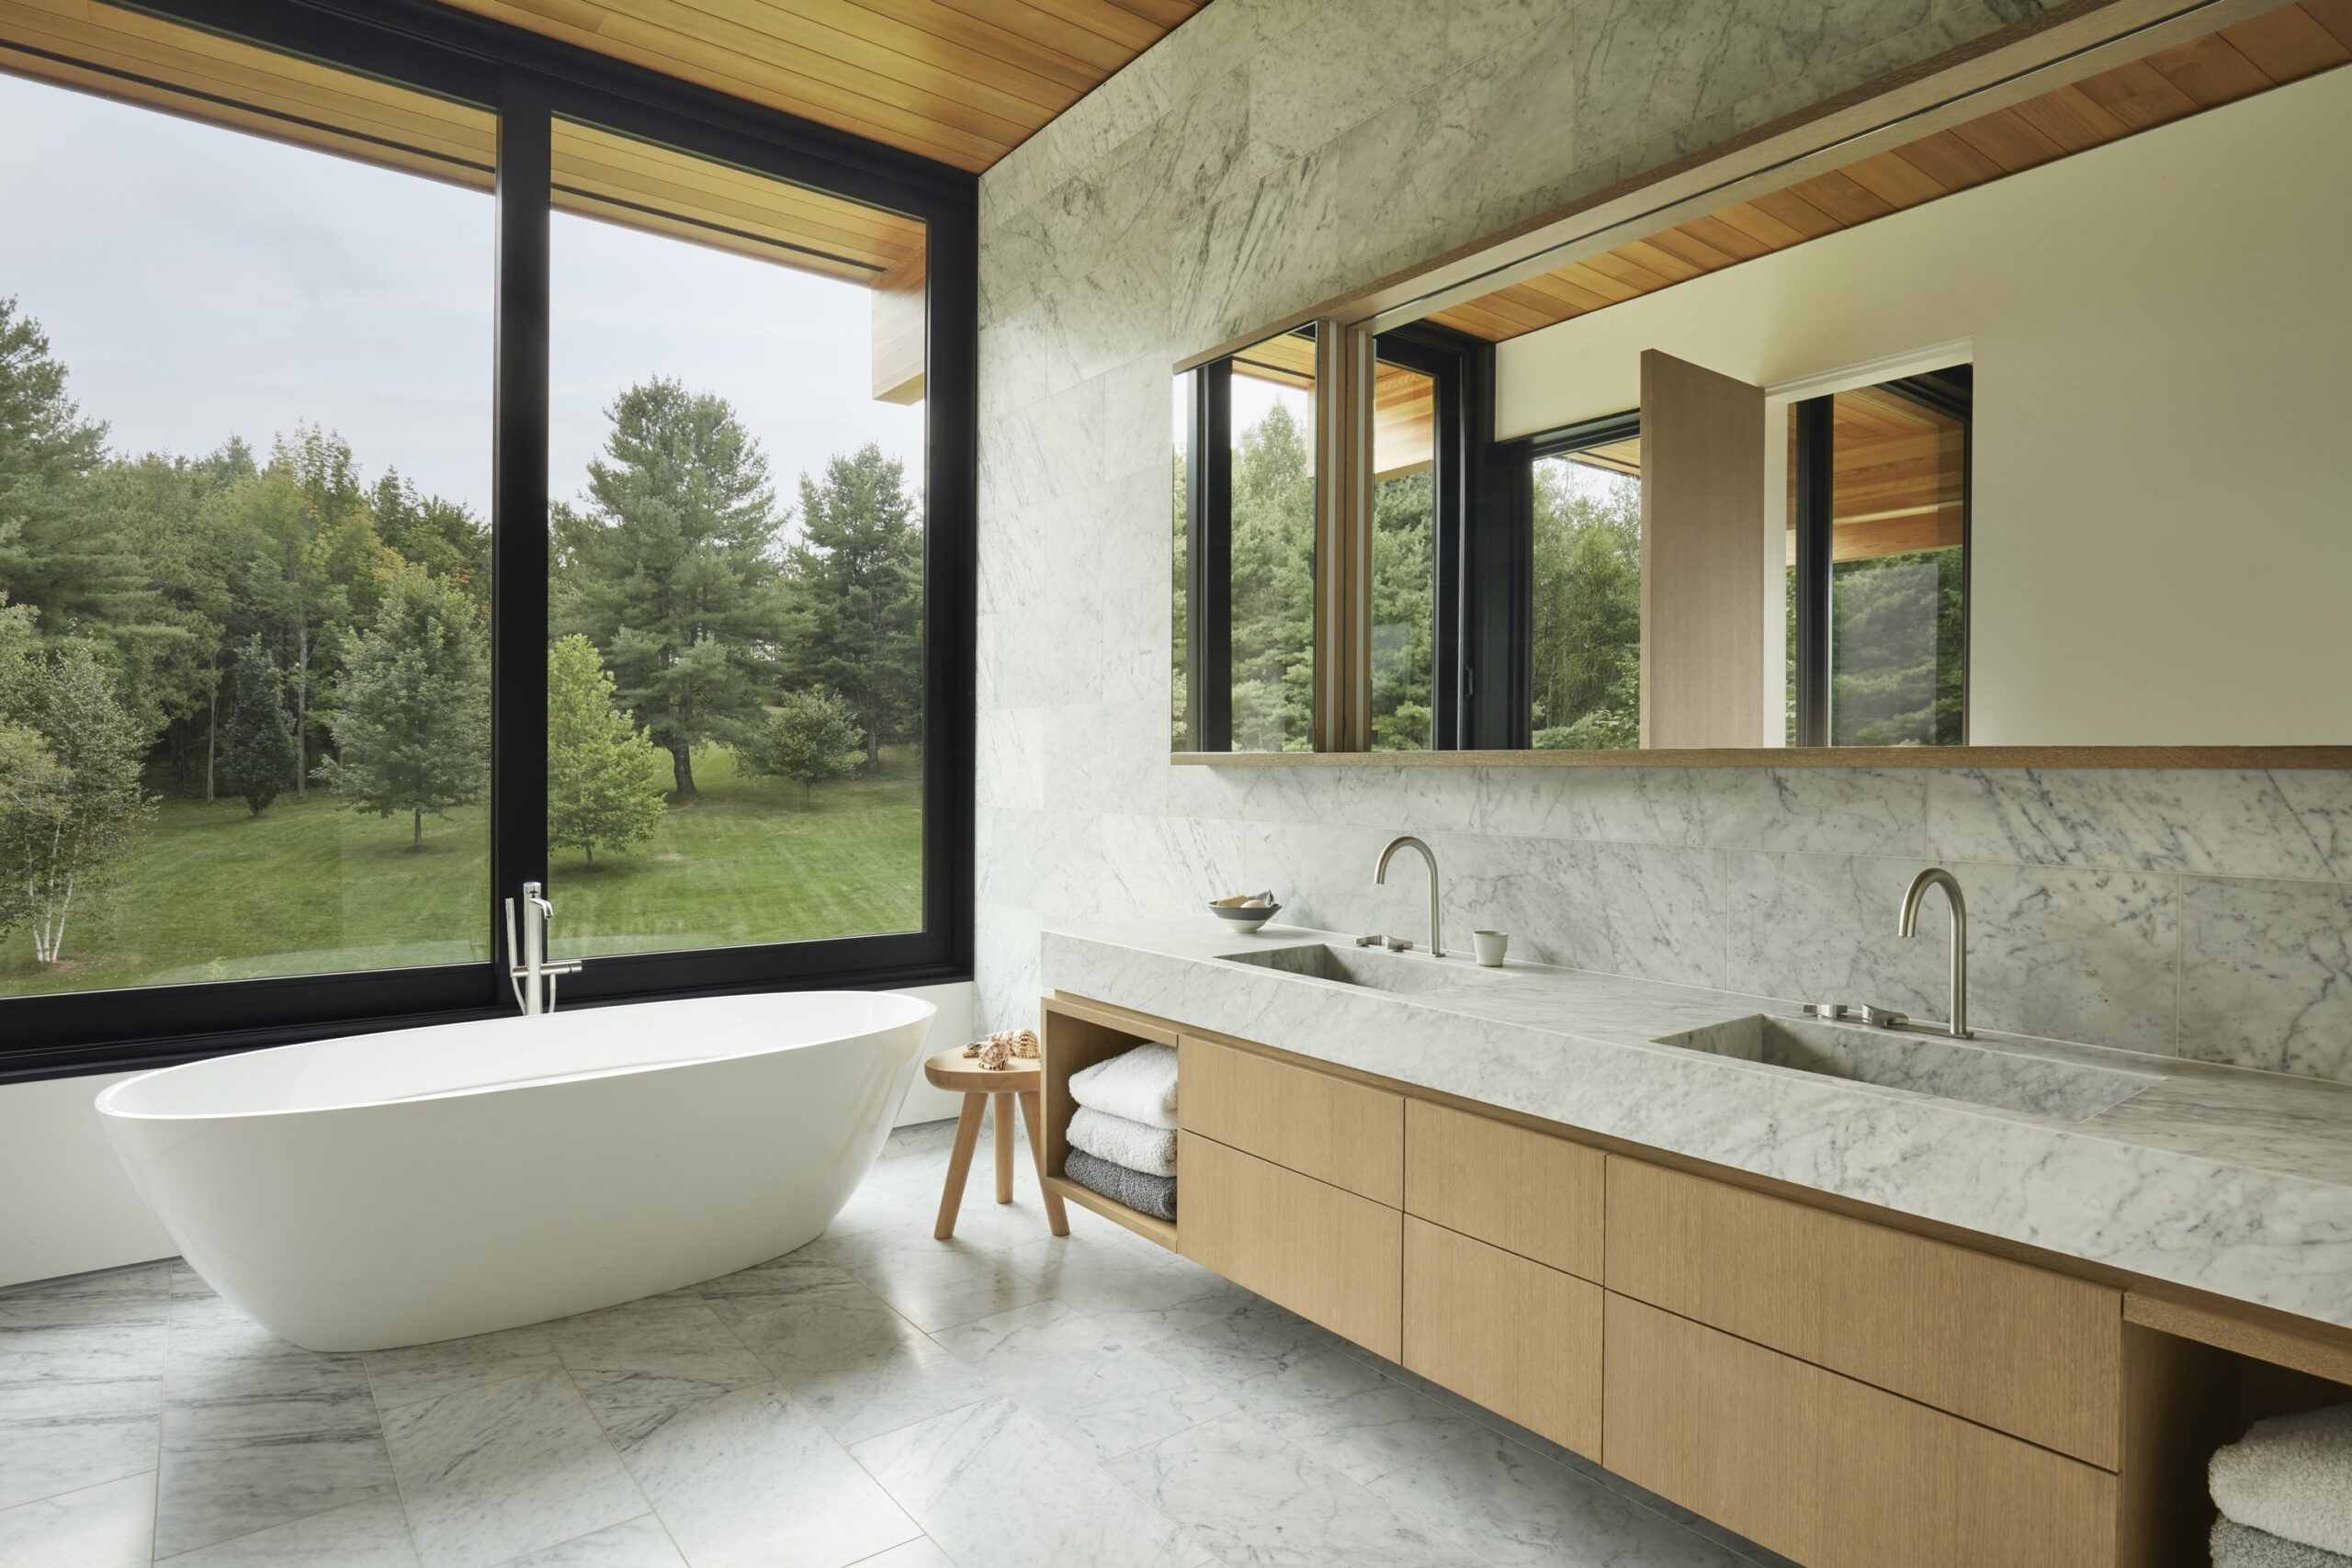 Salle de bain avec baignoire autoportante, double vasque et vue sur le paysage forestier